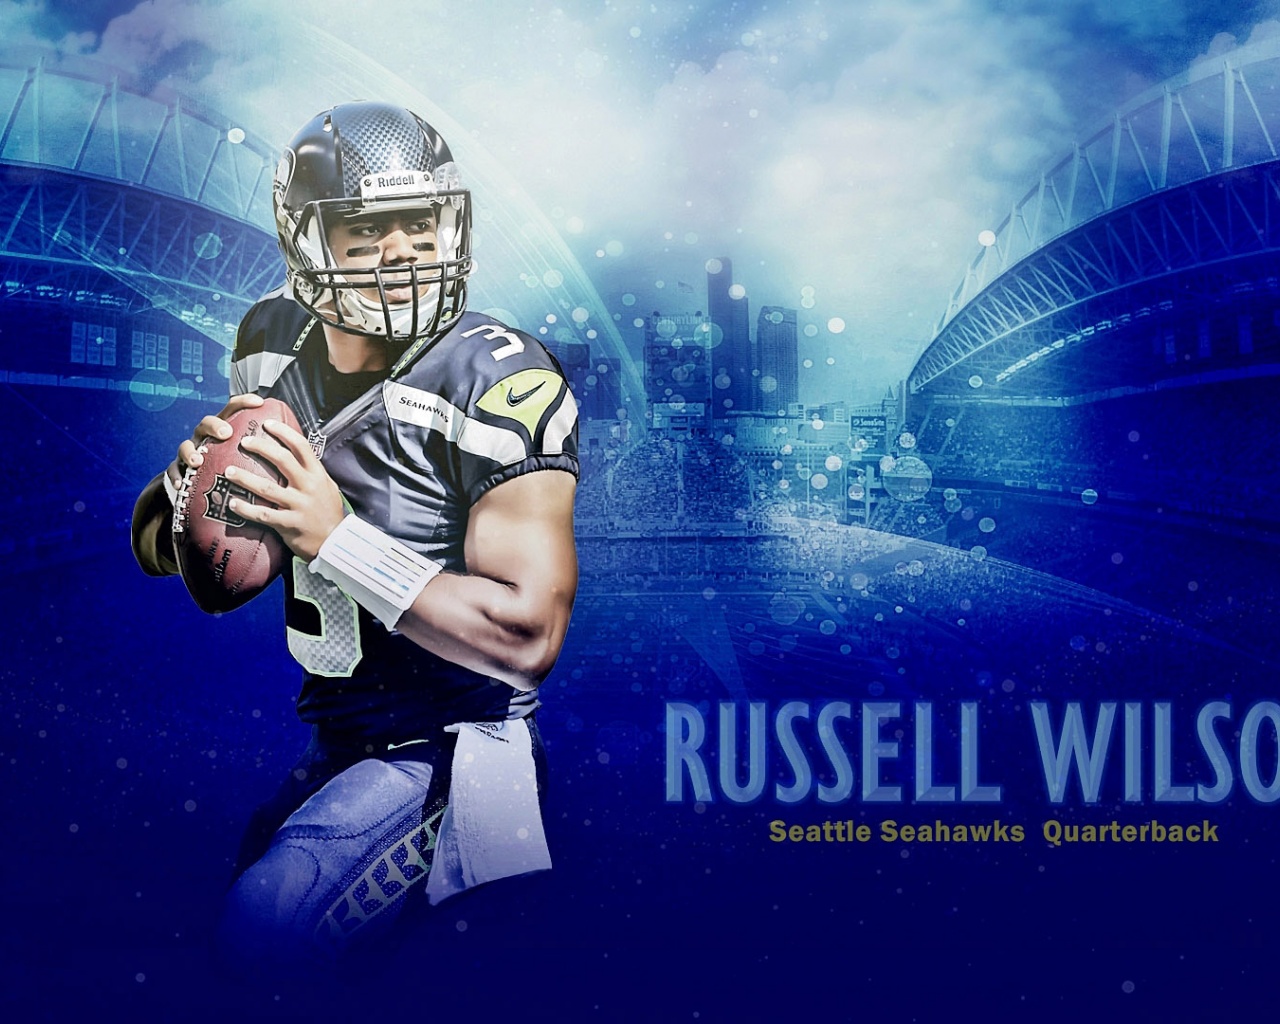 Russell Wilson 2015 Seattle Seahawks